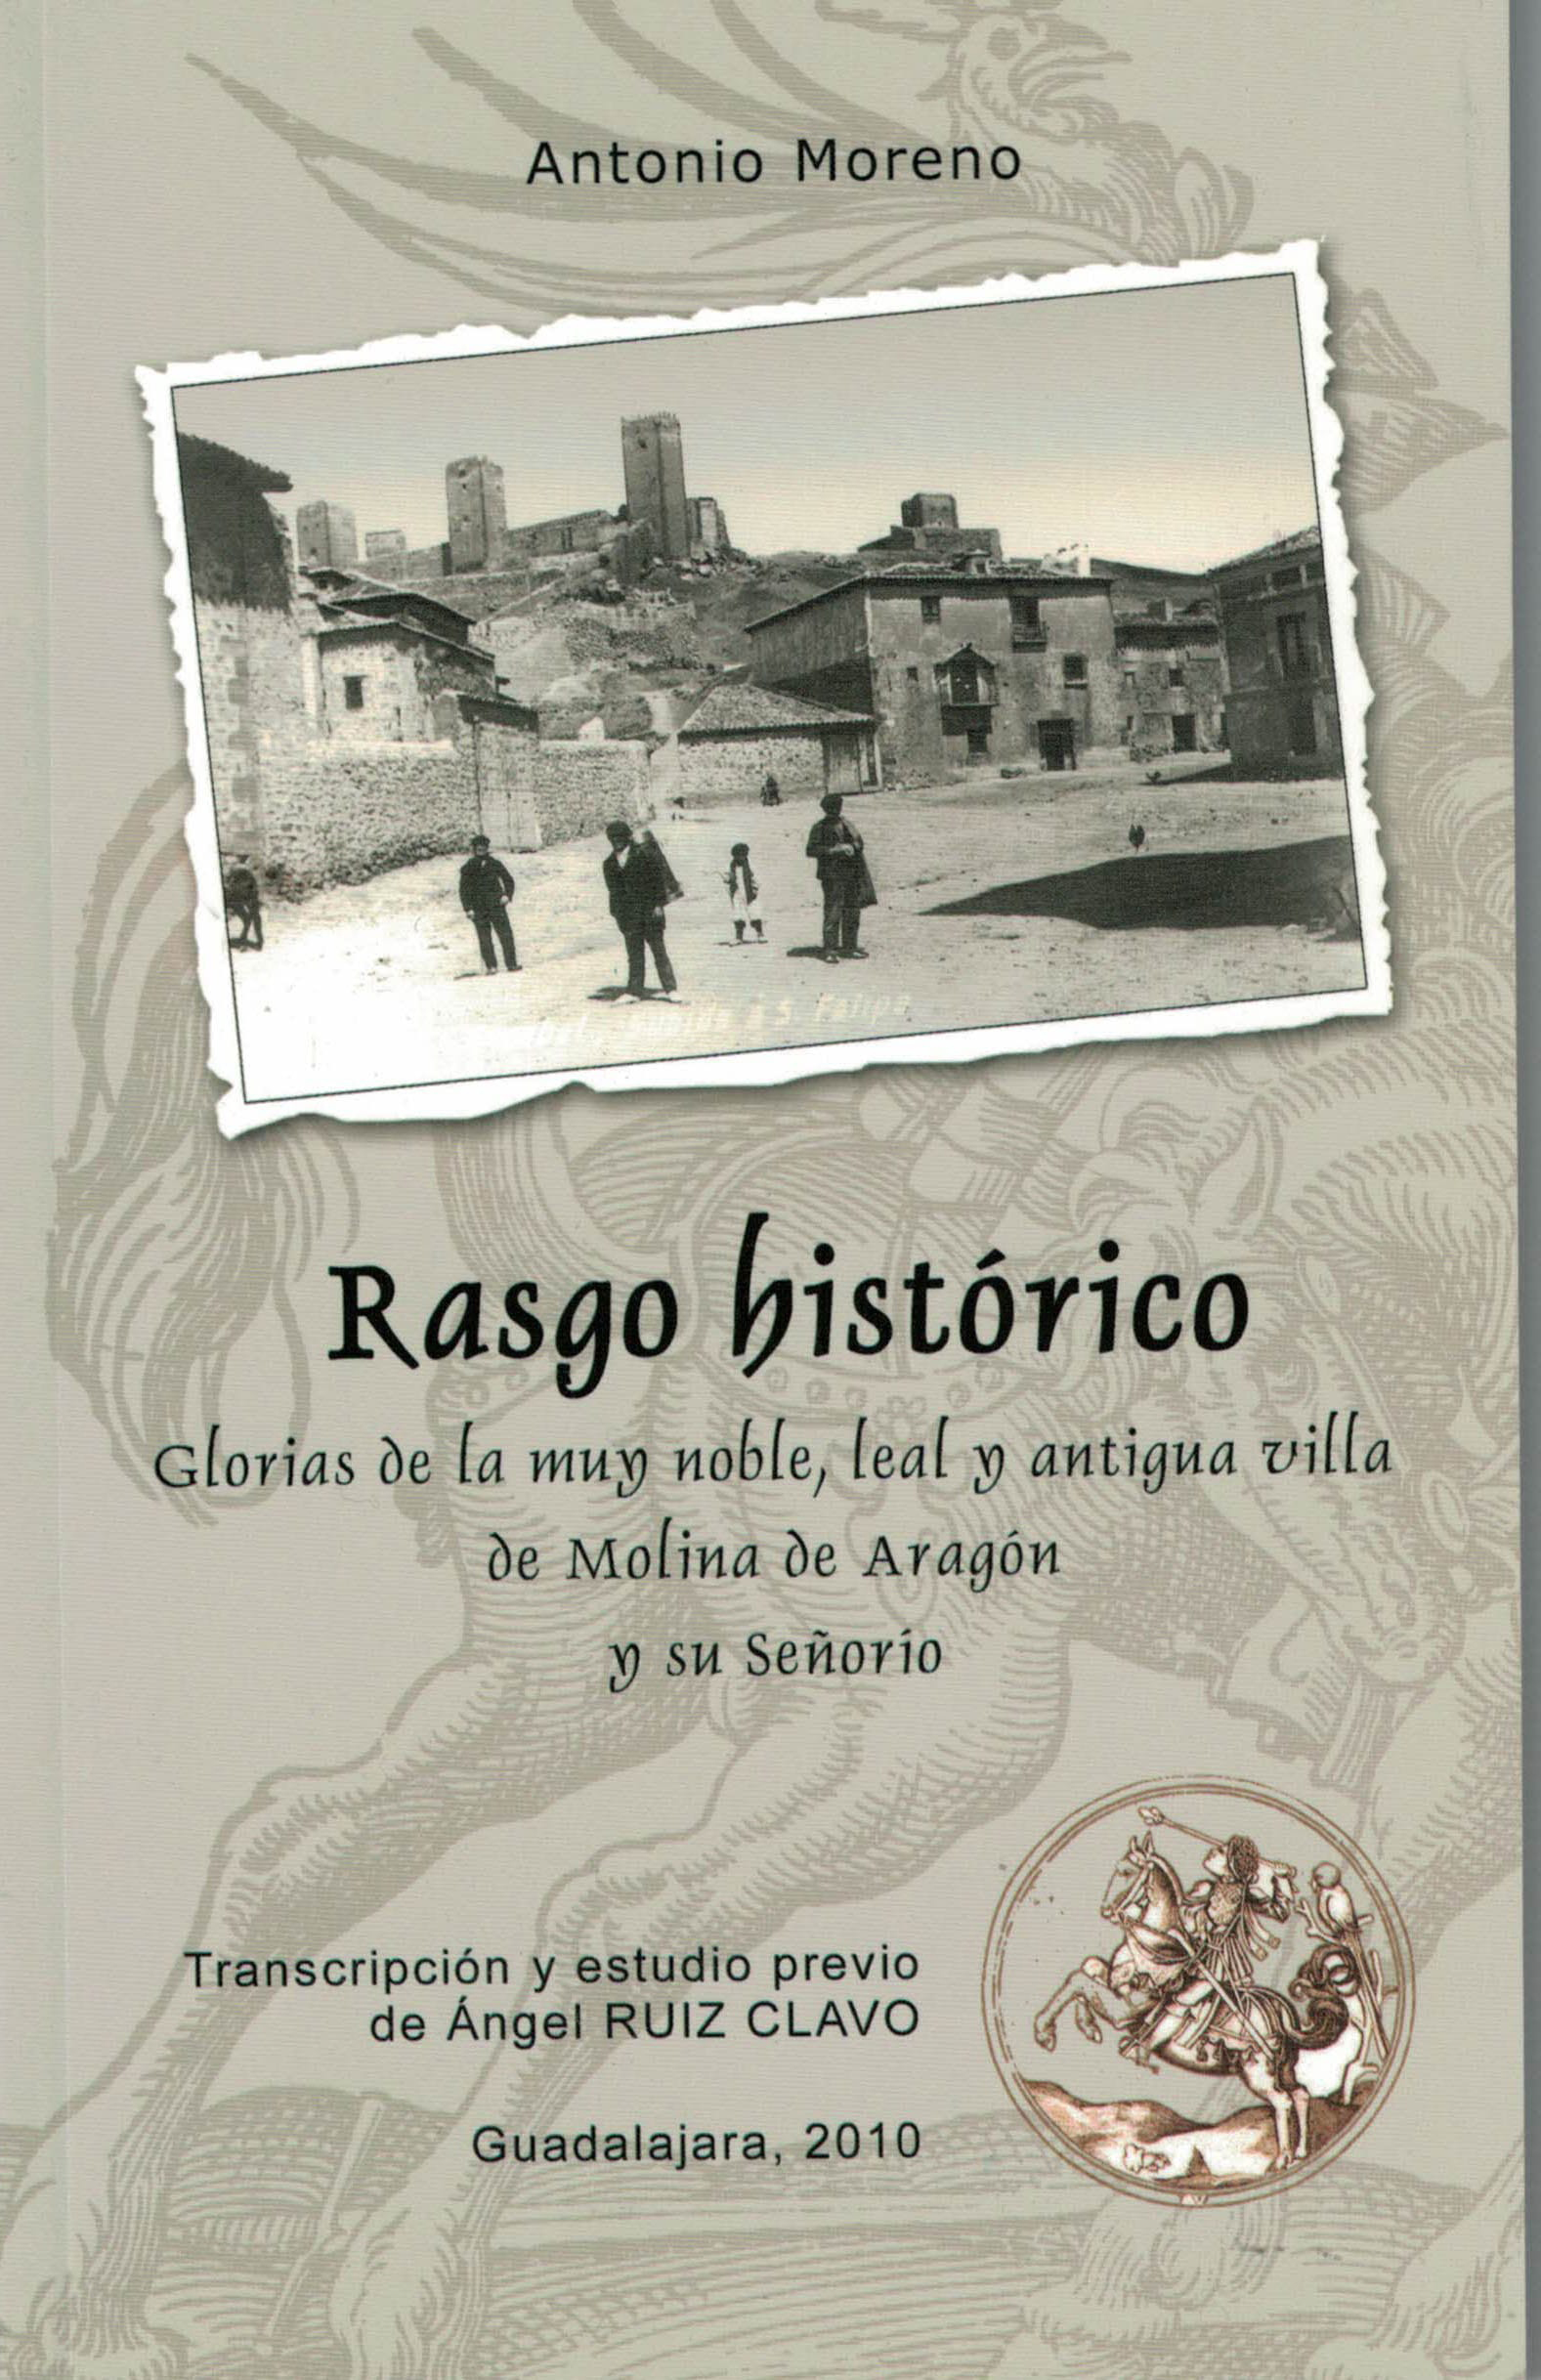 Rasgo historico glorias de la muy noble, leal y antigua villa de Molina de Aragón y su señorío